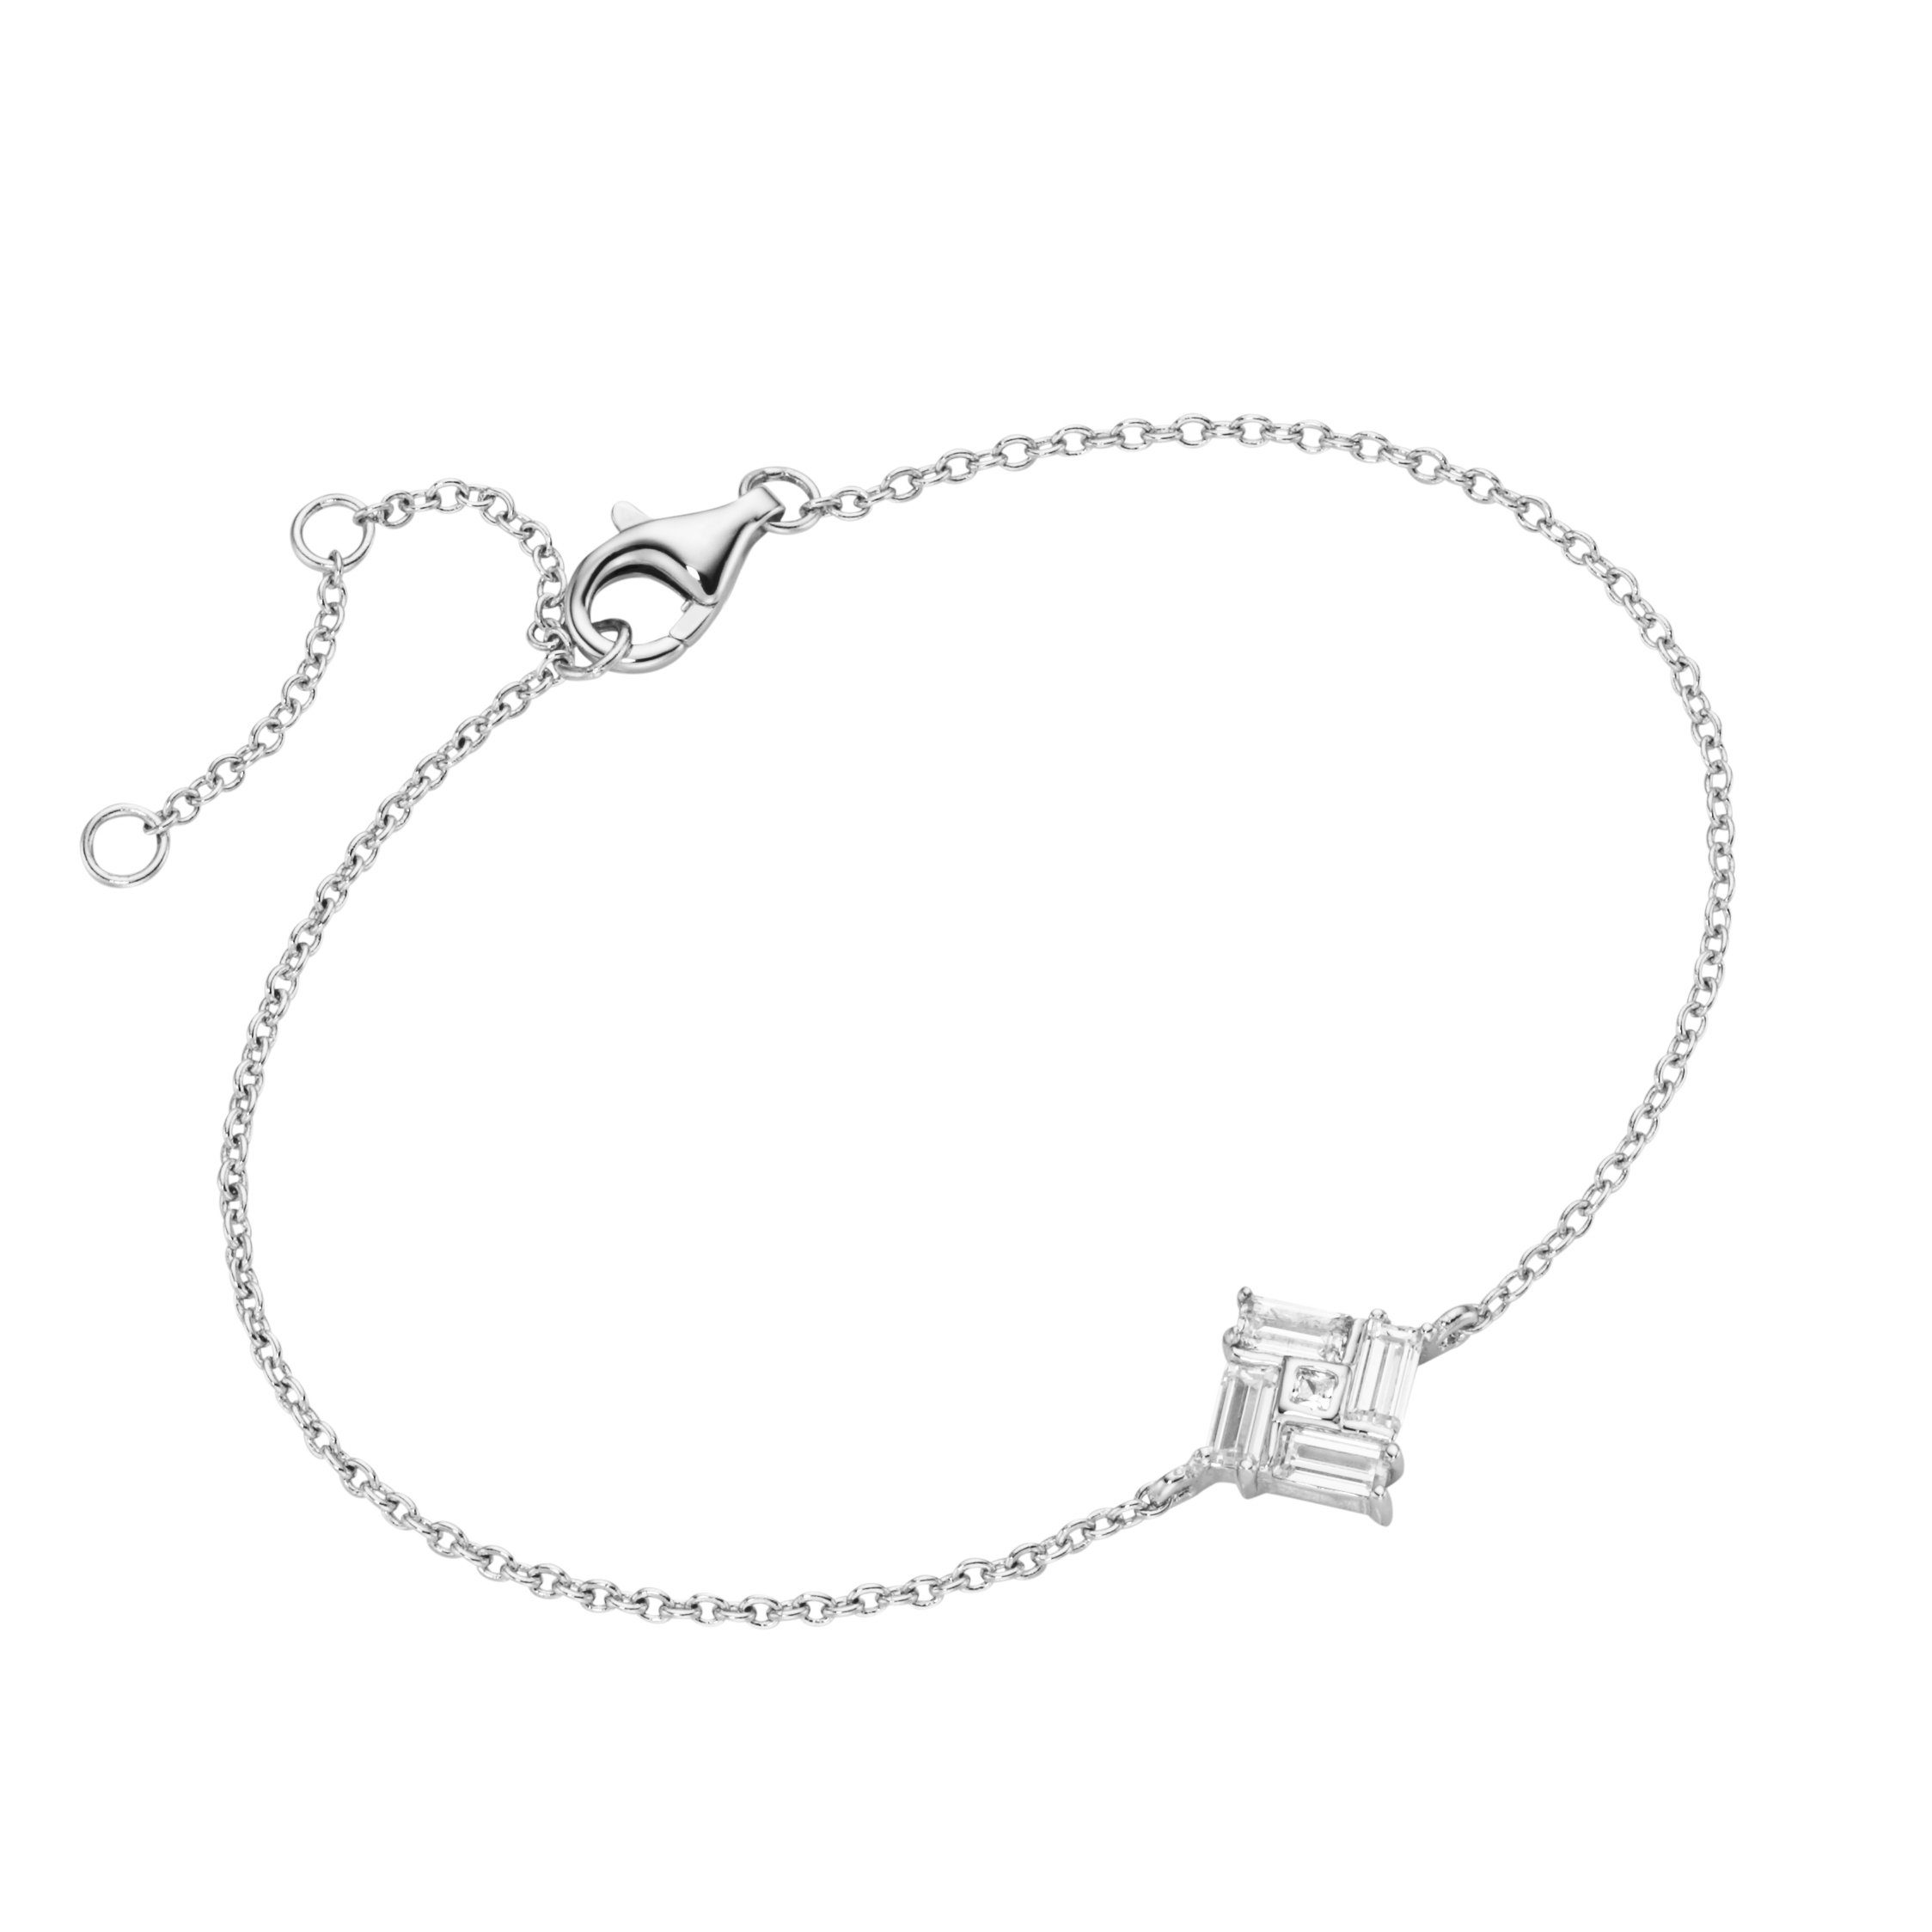 [Qualitätsgarantie und kostenloser Versand vorausgesetzt] Smart Jewel Armband Zirkonia Steinen, mit 925 Silber